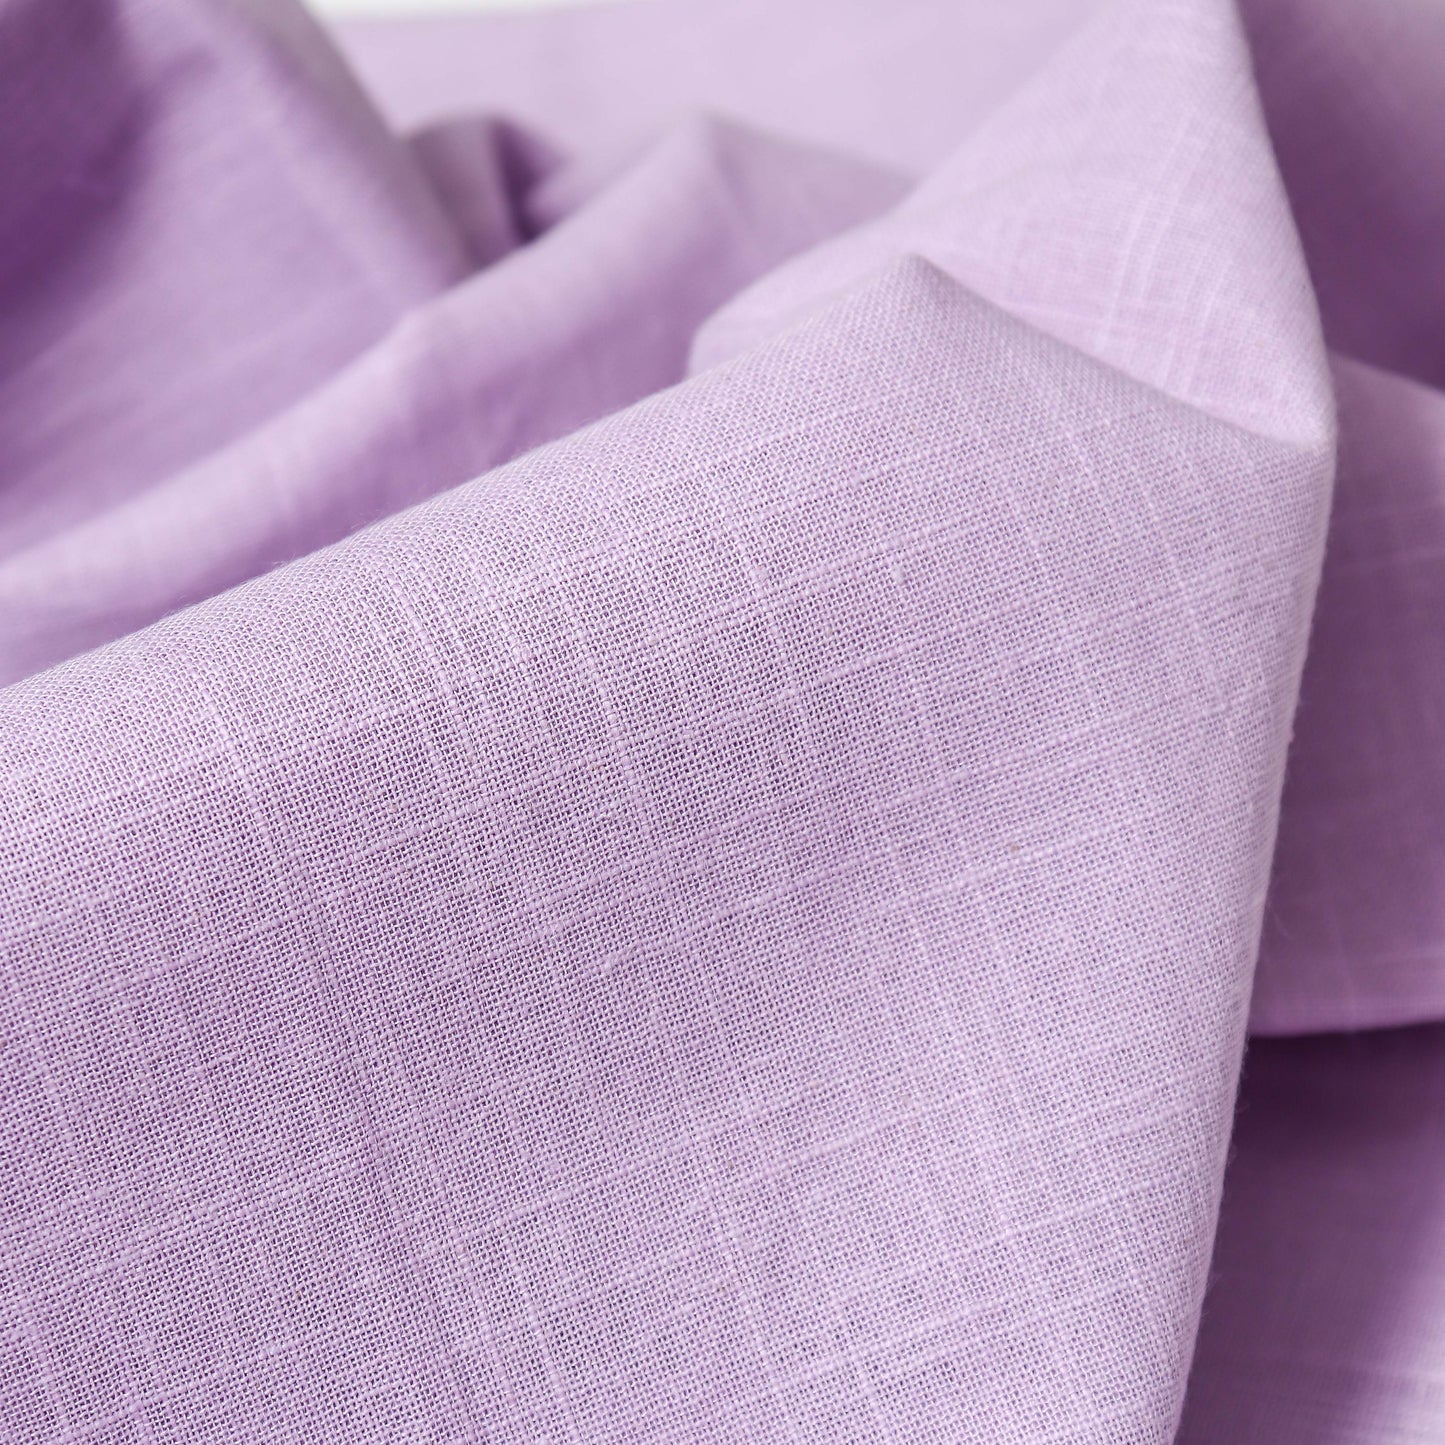 Cotton Slub Lavender Kurta Fabric (2.5 Meters) | and Plain Dyed Pure Cotton Pyjama (2.5 Meters)